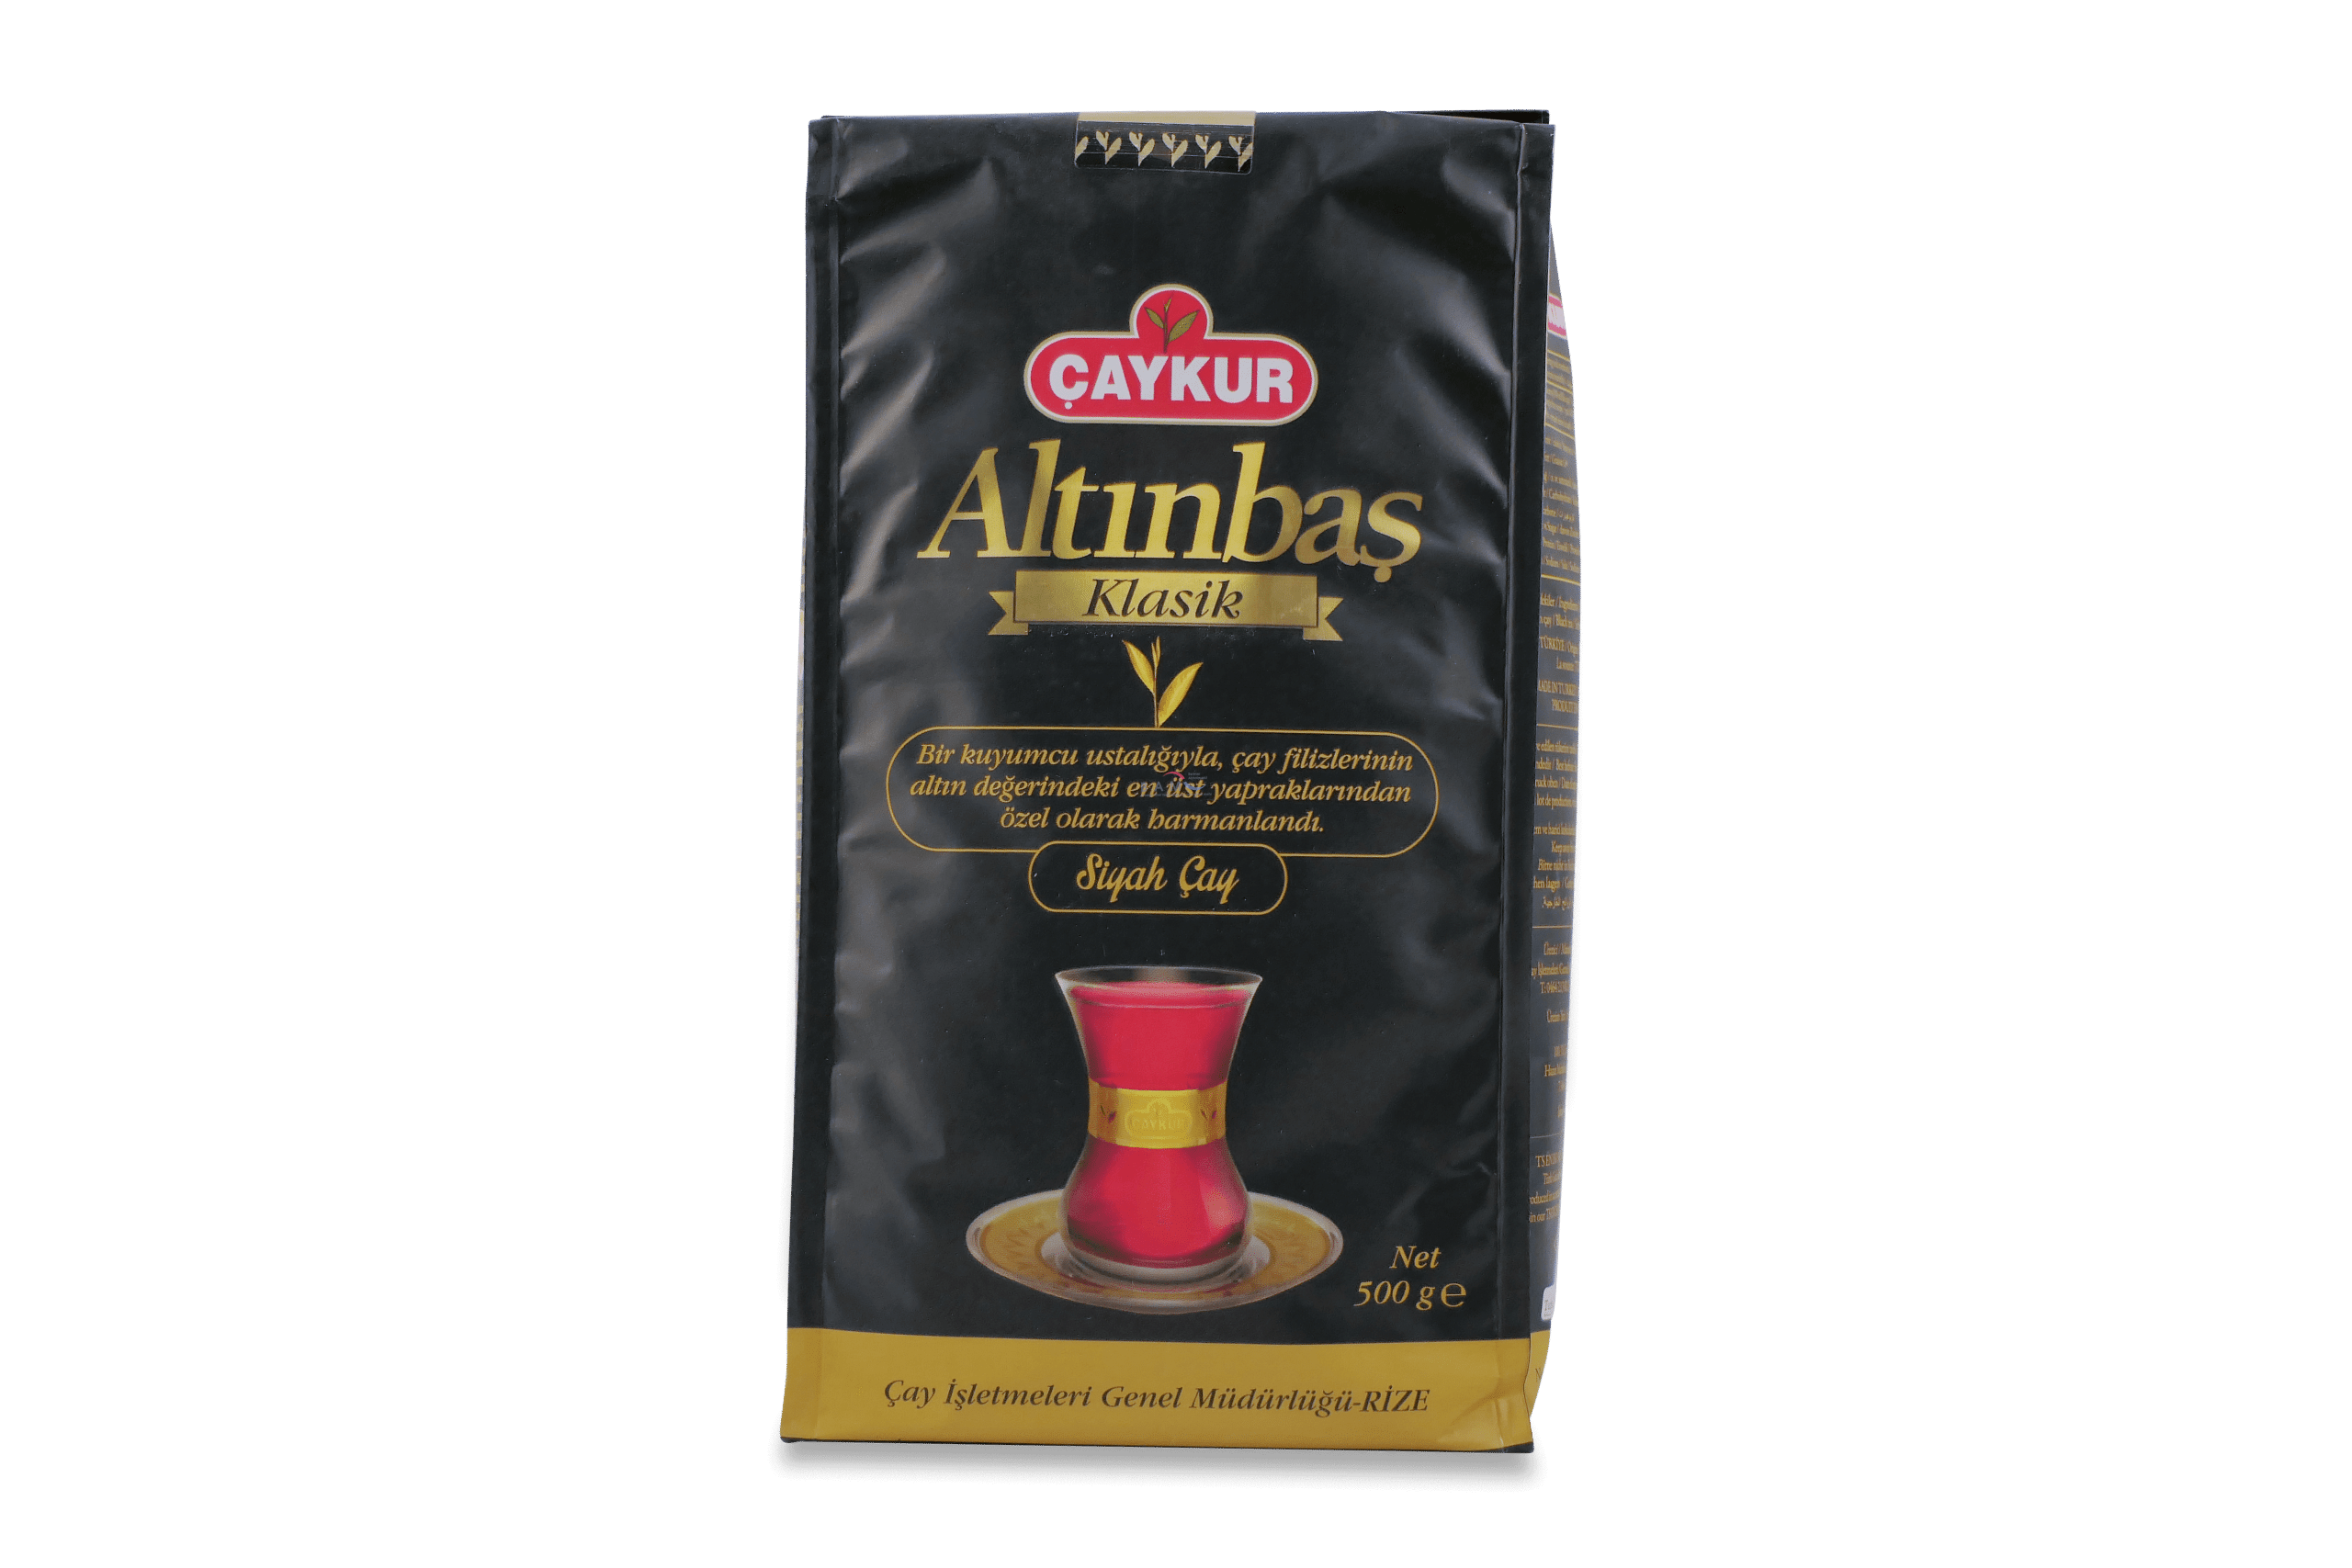 Caykur Altinbas Klasik / schwarzer Tee 500g